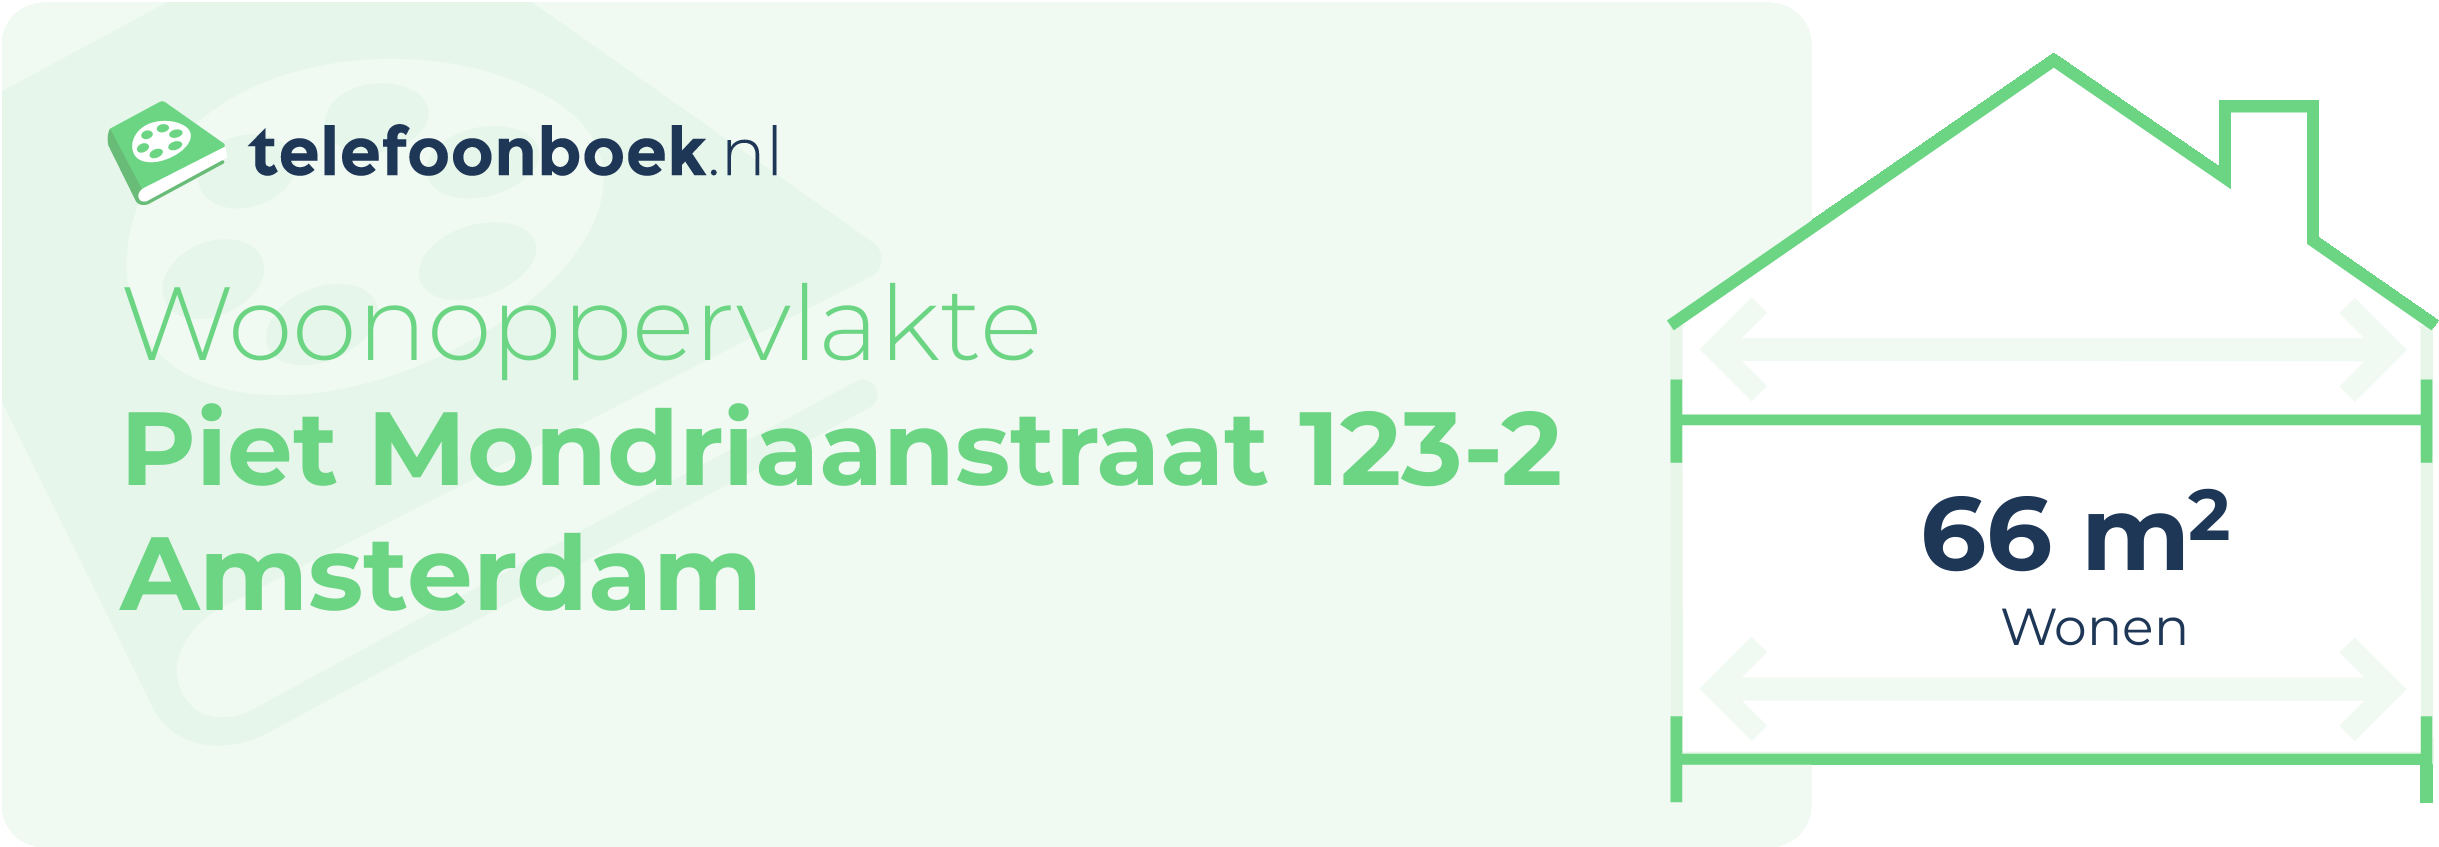 Woonoppervlakte Piet Mondriaanstraat 123-2 Amsterdam